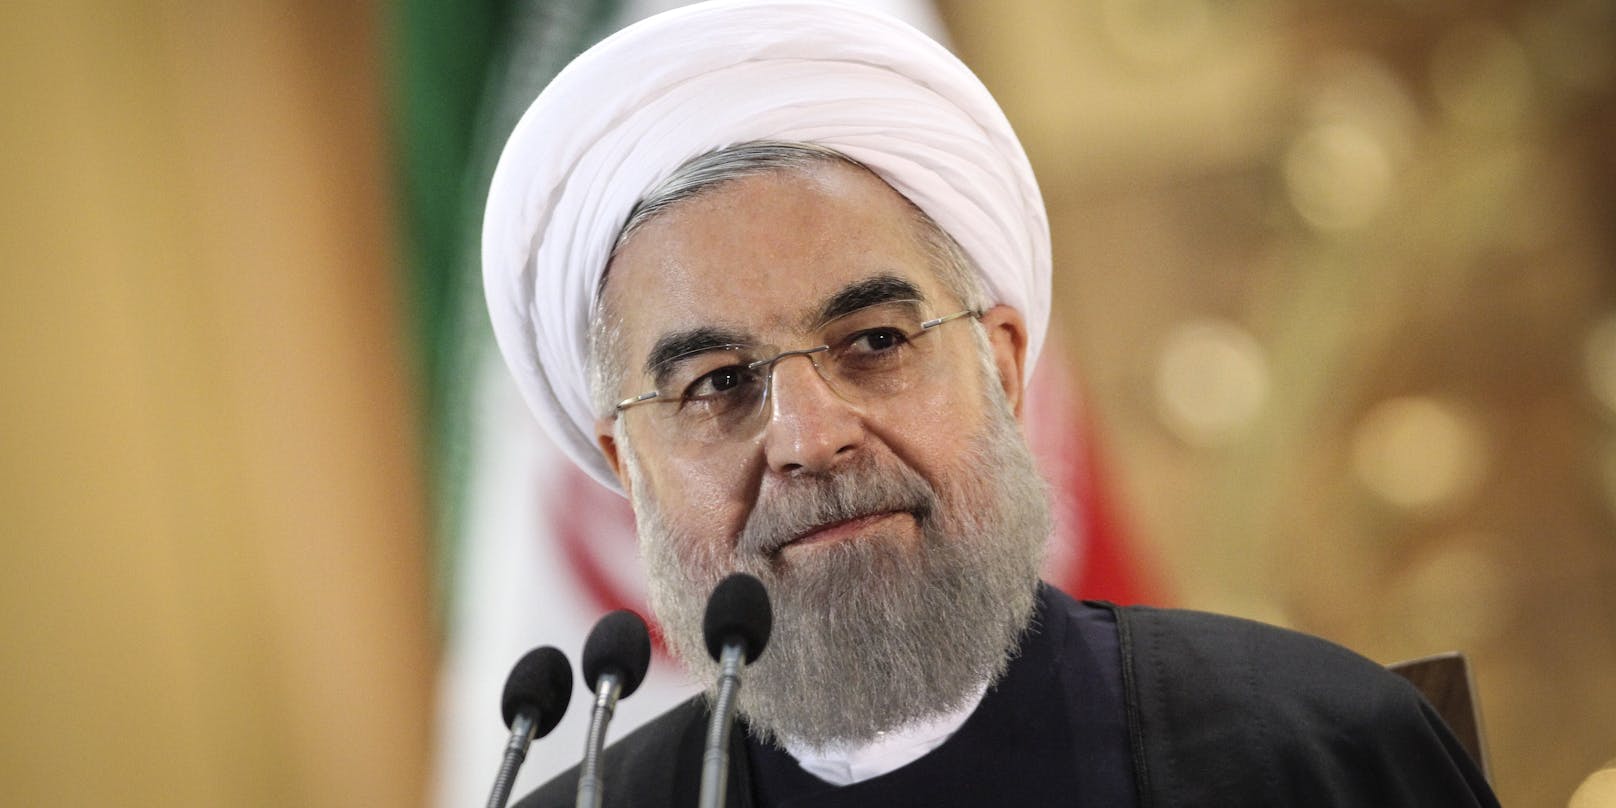 Der Iran geht offenbar weiter auf Konfrontationskurs: Der iranische Präsident Hassan Ruhani an einem Treffen mit der Corona-Taskforce seines Landes.